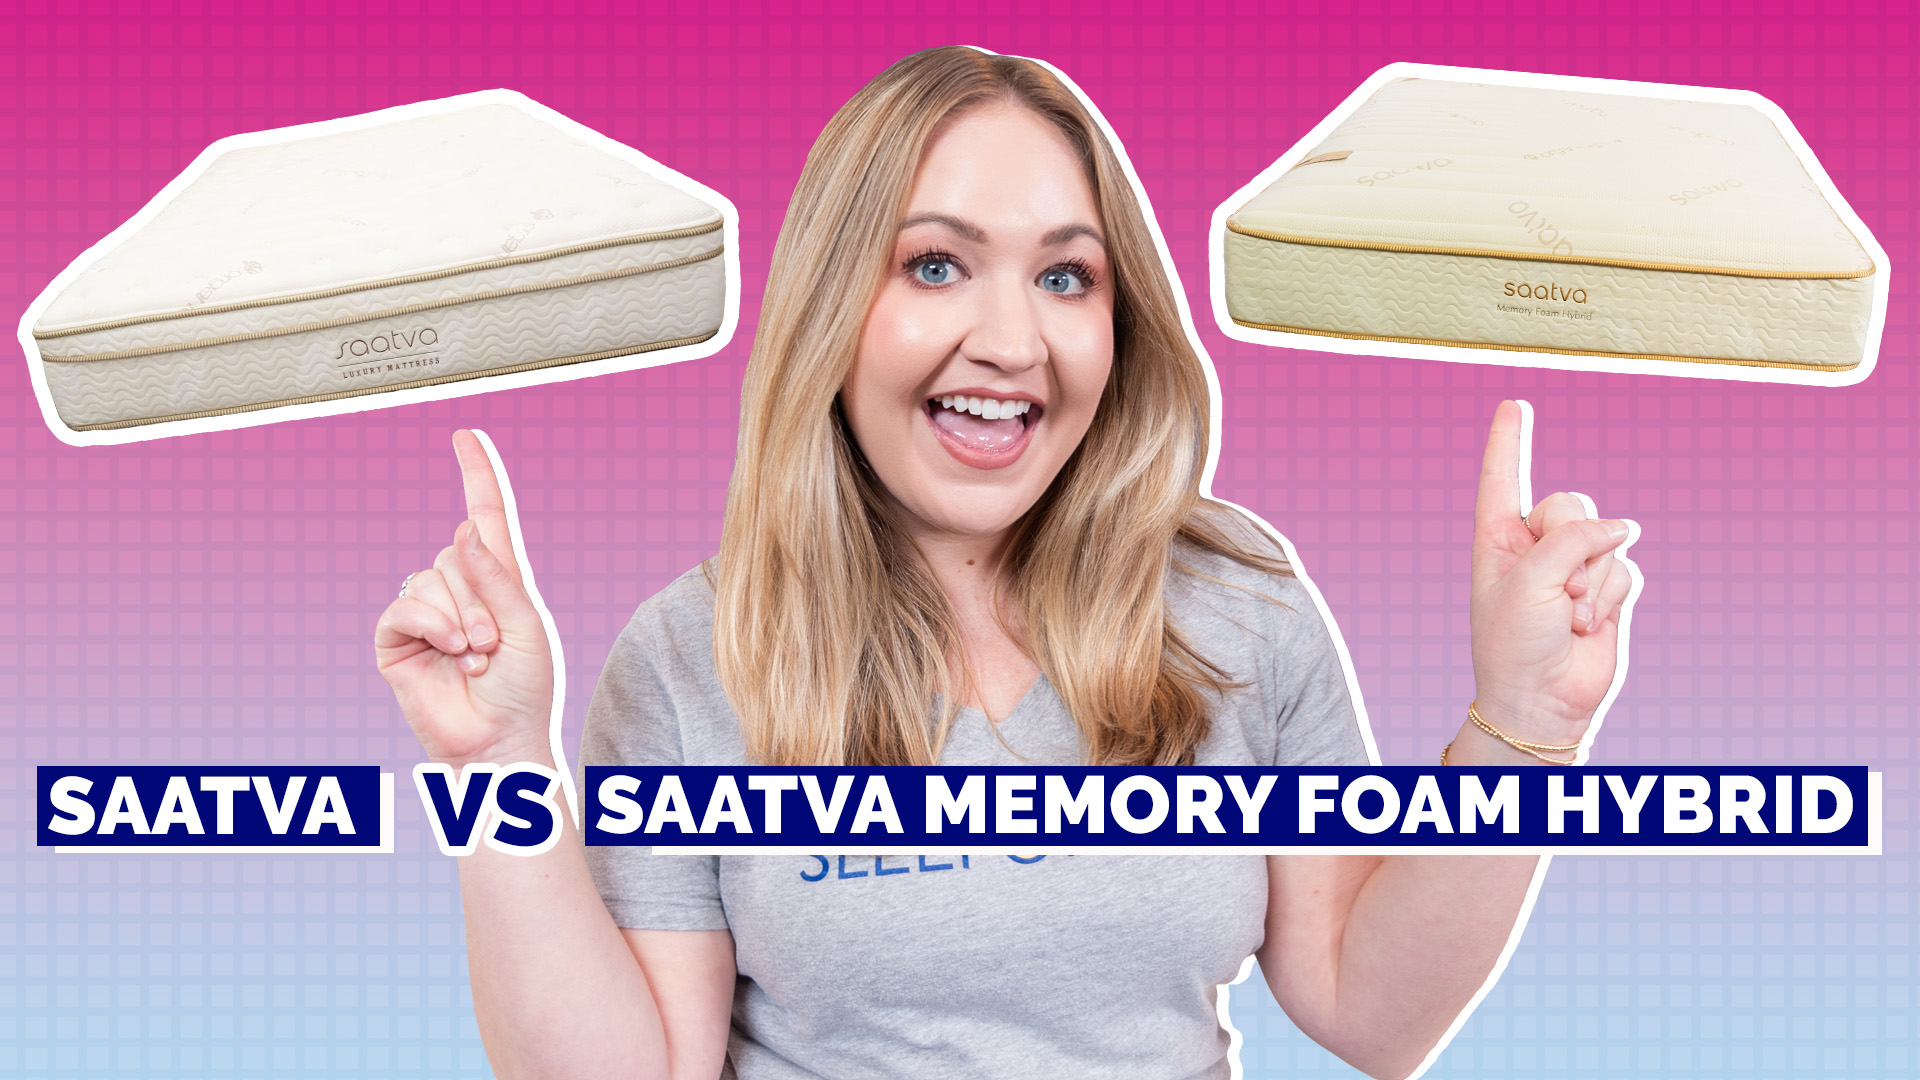 Memory foam vs. hybrid: Side-by-side comparison